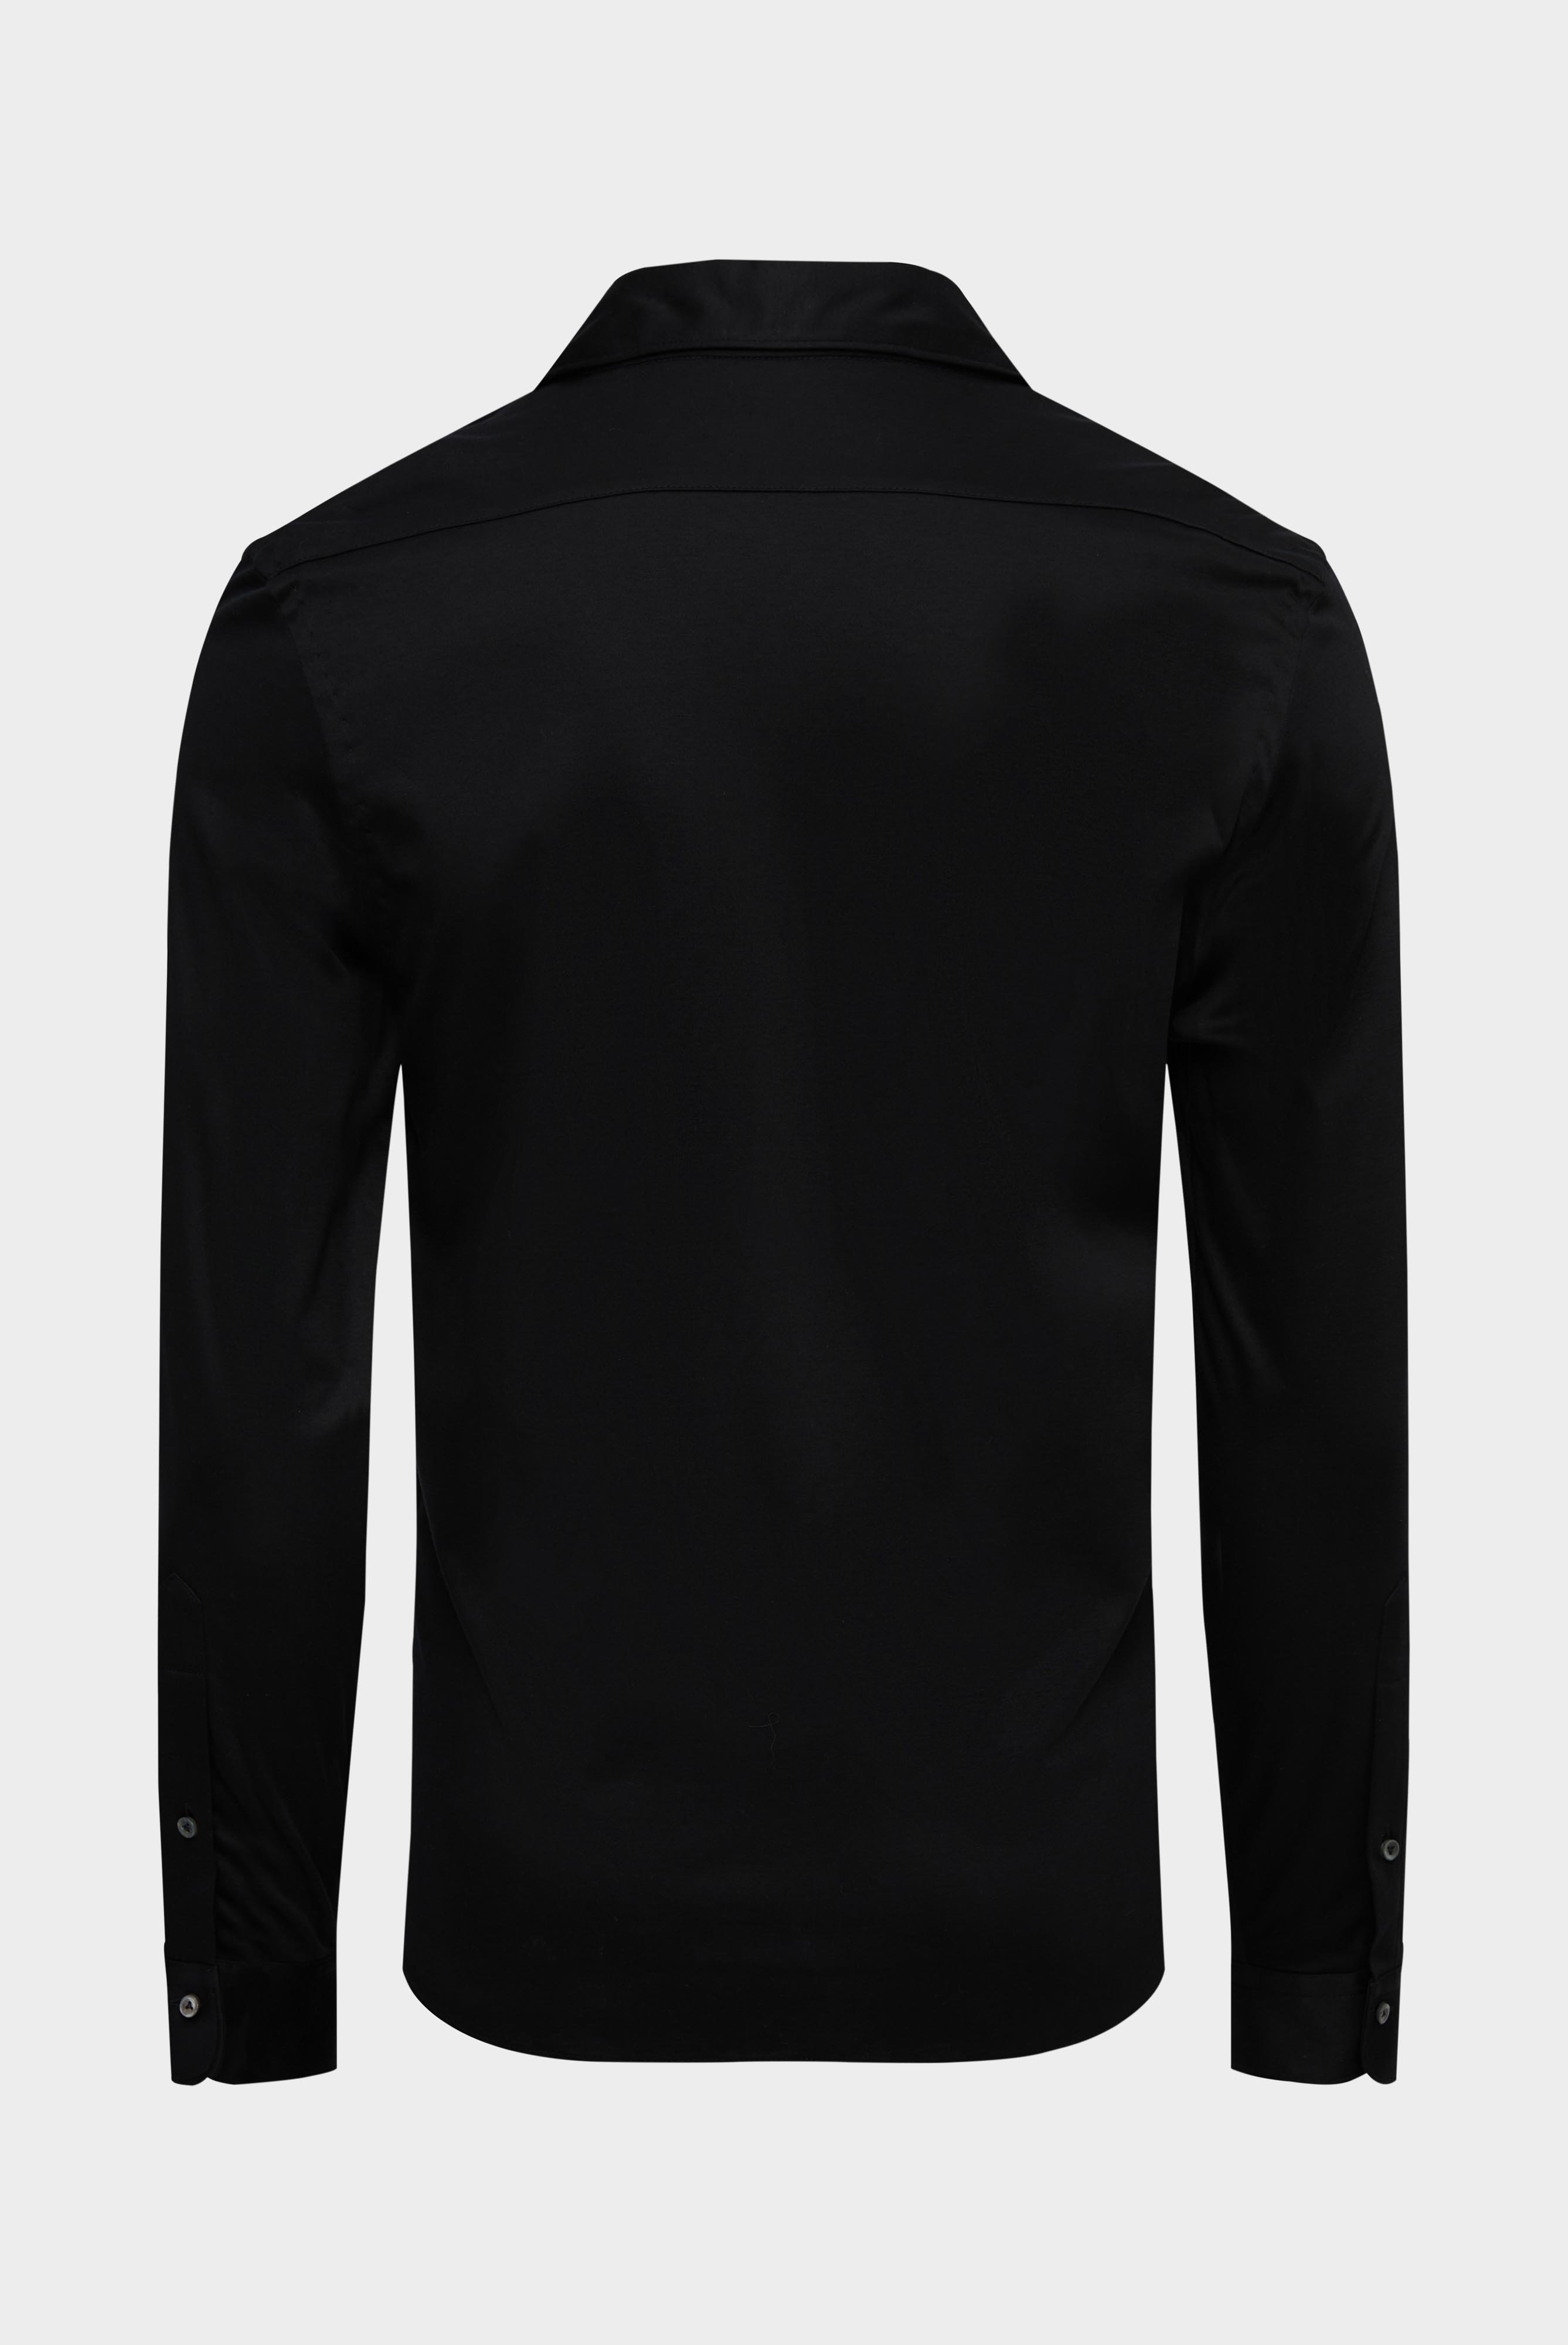 Jersey Shirts+Jersey Shirt Swiss Cotton Slim Fit+20.1682.UC.180031.099.L